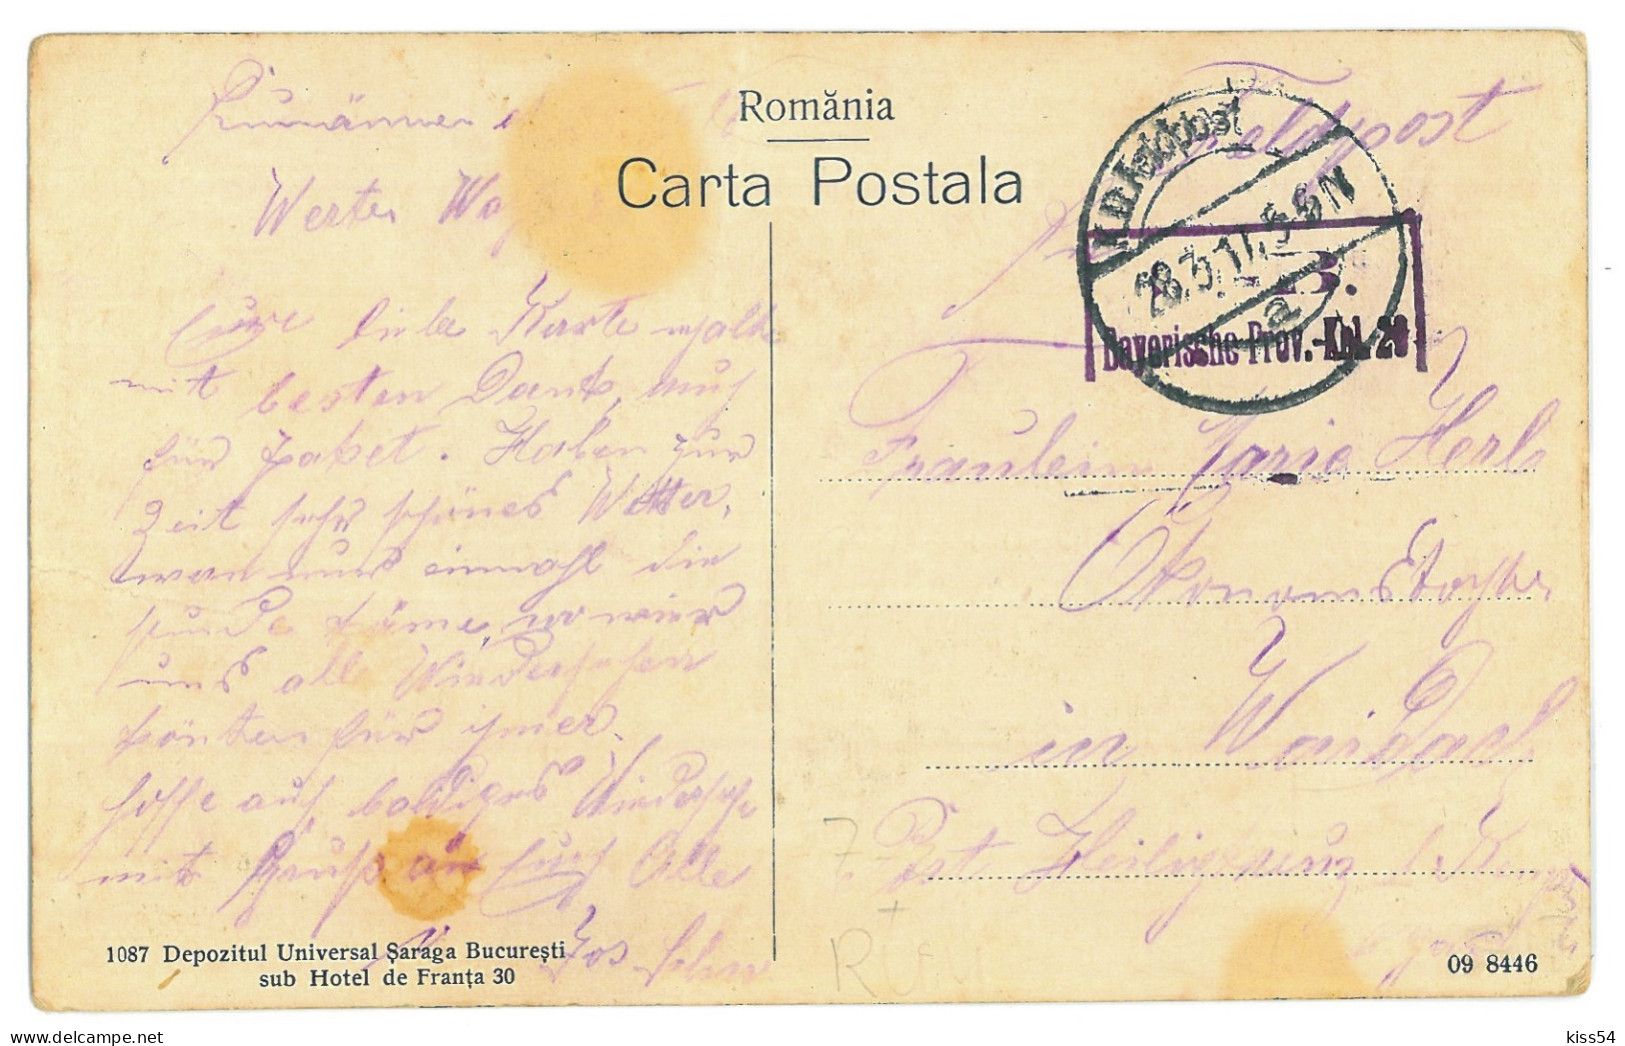 RO 63 - 24209 BUSTENARI, Prahova, Oil Wells, Romania - Old Postcard, CENSOR - Used - 1917 - Rumänien